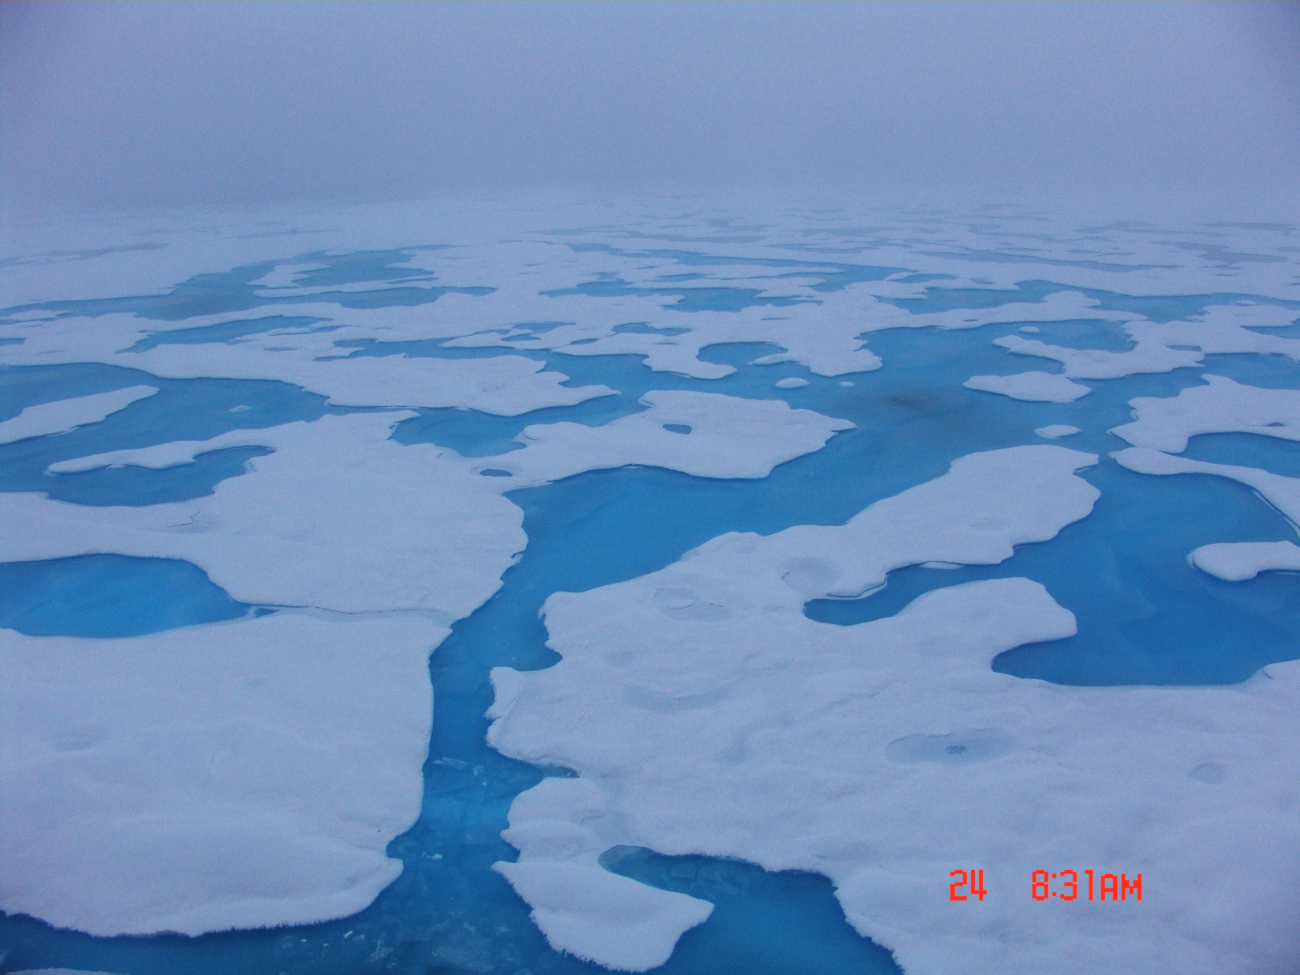 Aquamarine melt ponds in multi-year ice